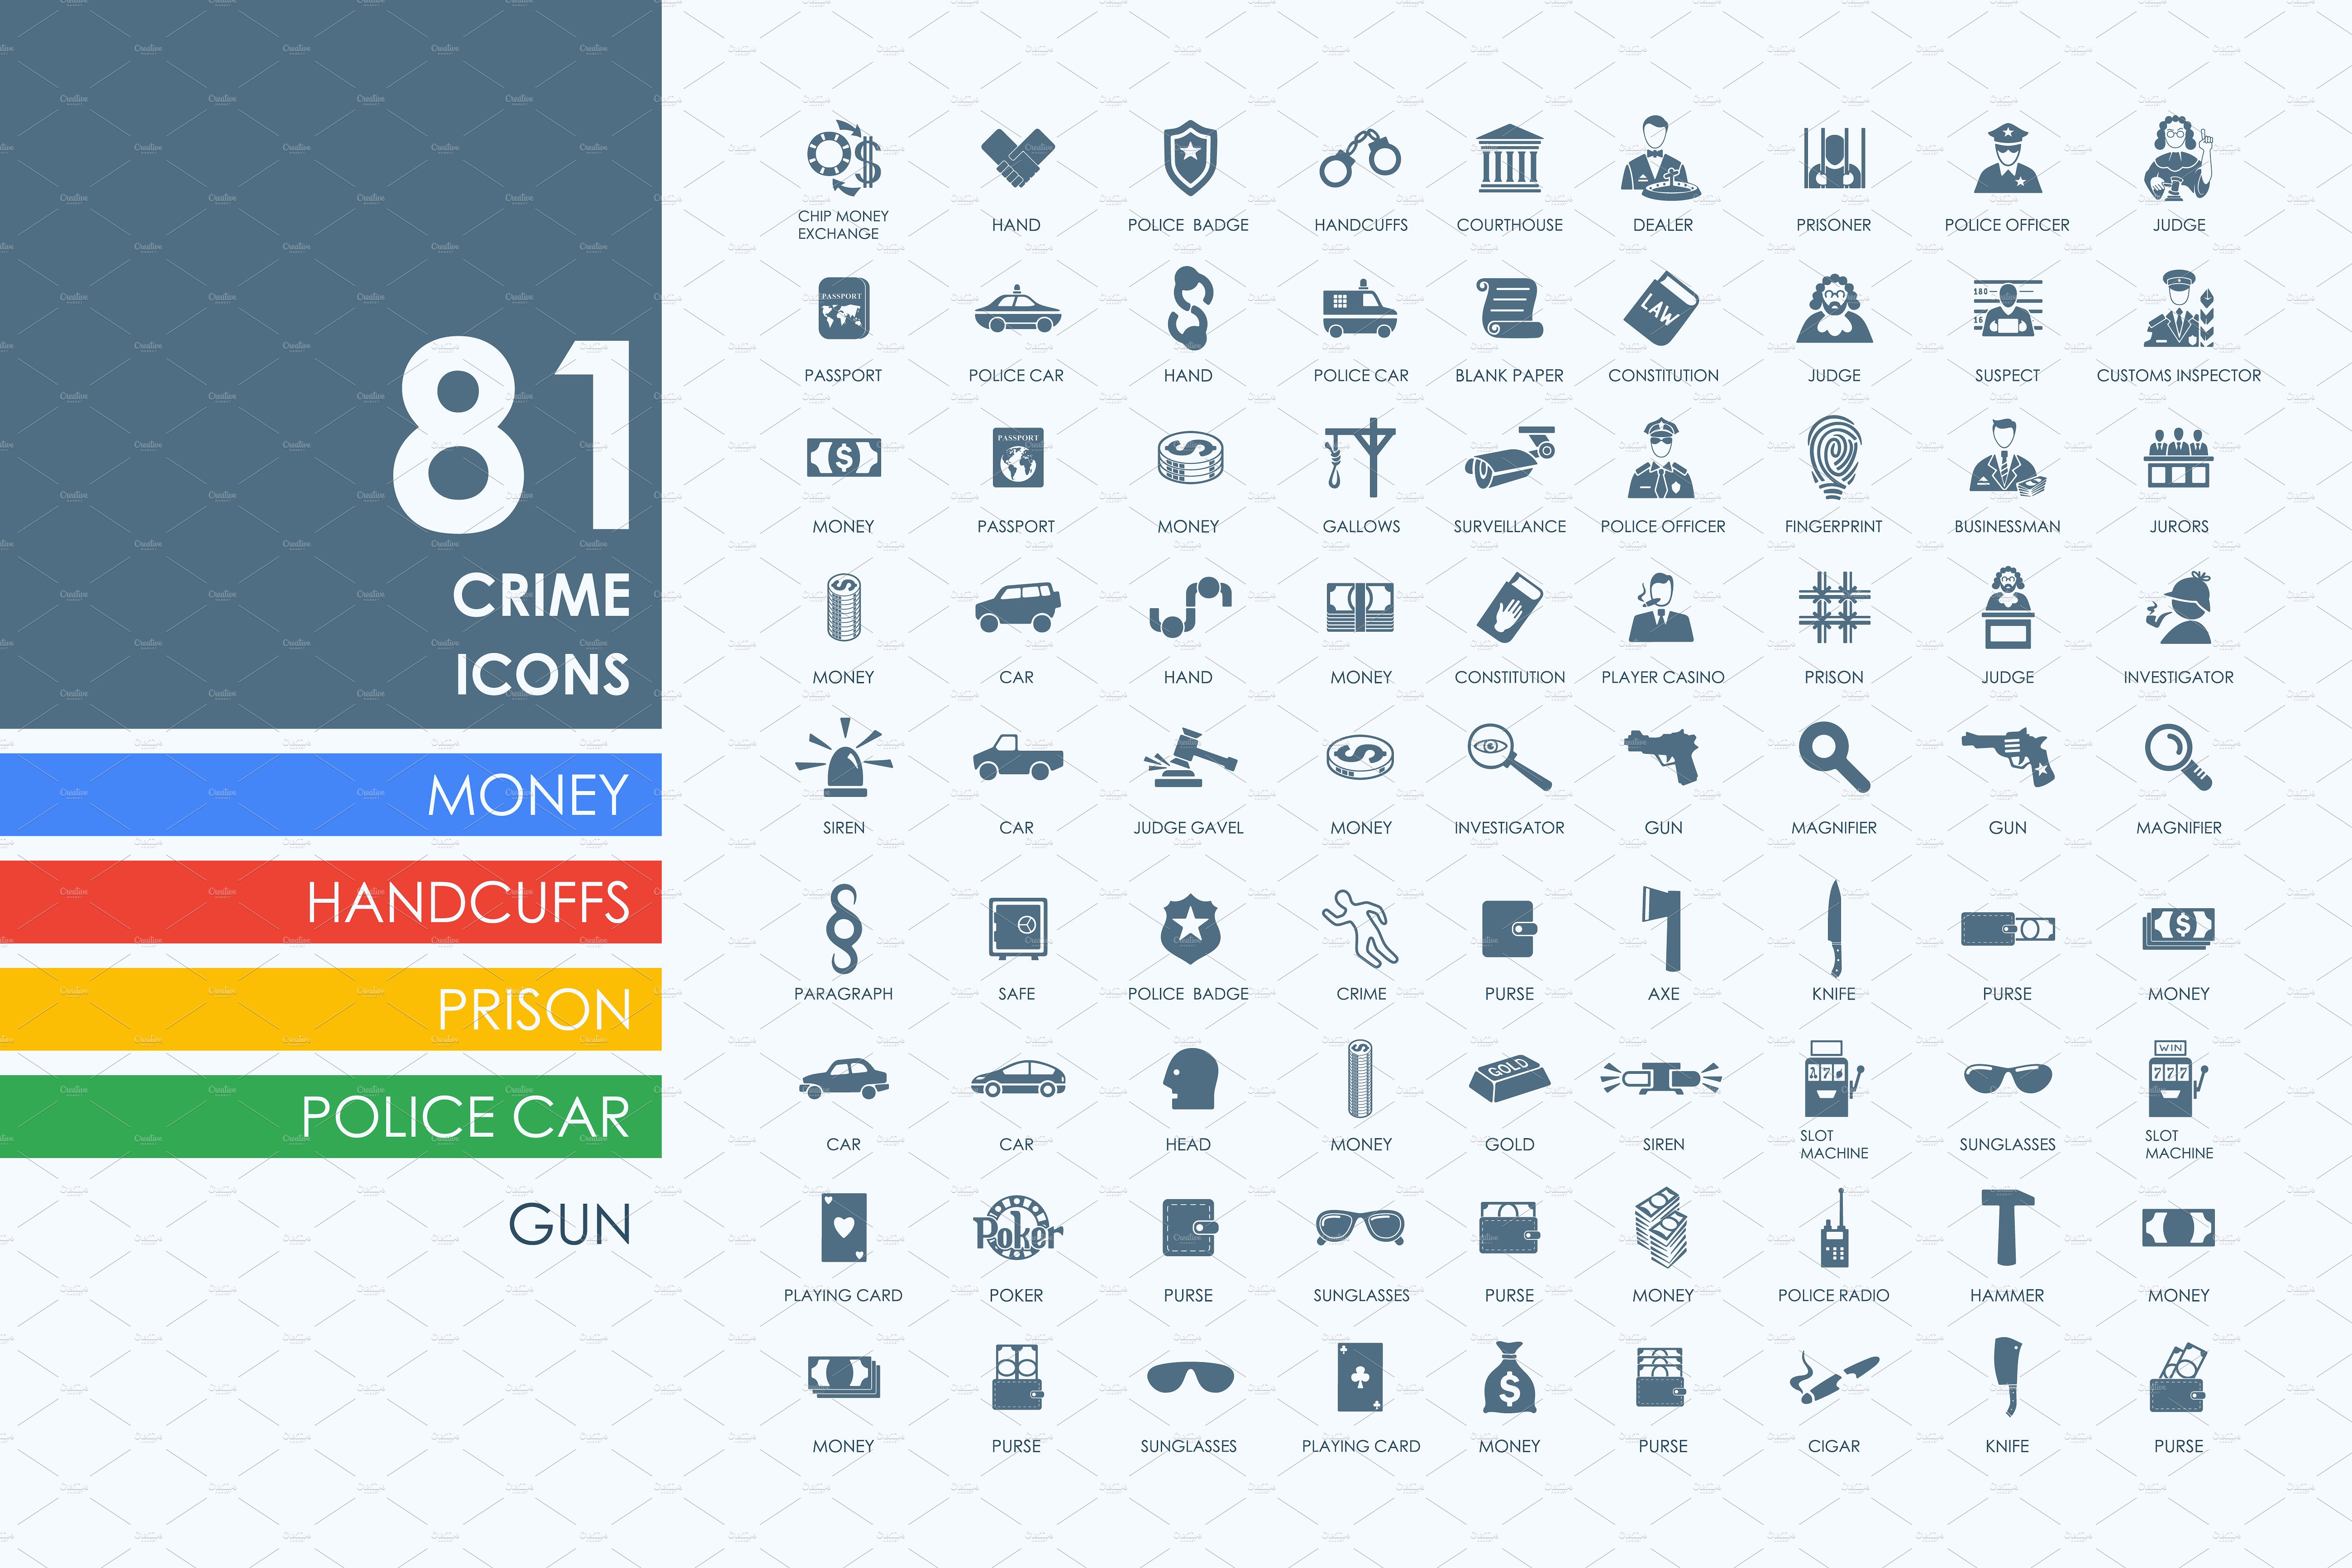 犯罪/监狱/警察主题图标集 Set of crime icons插图(1)